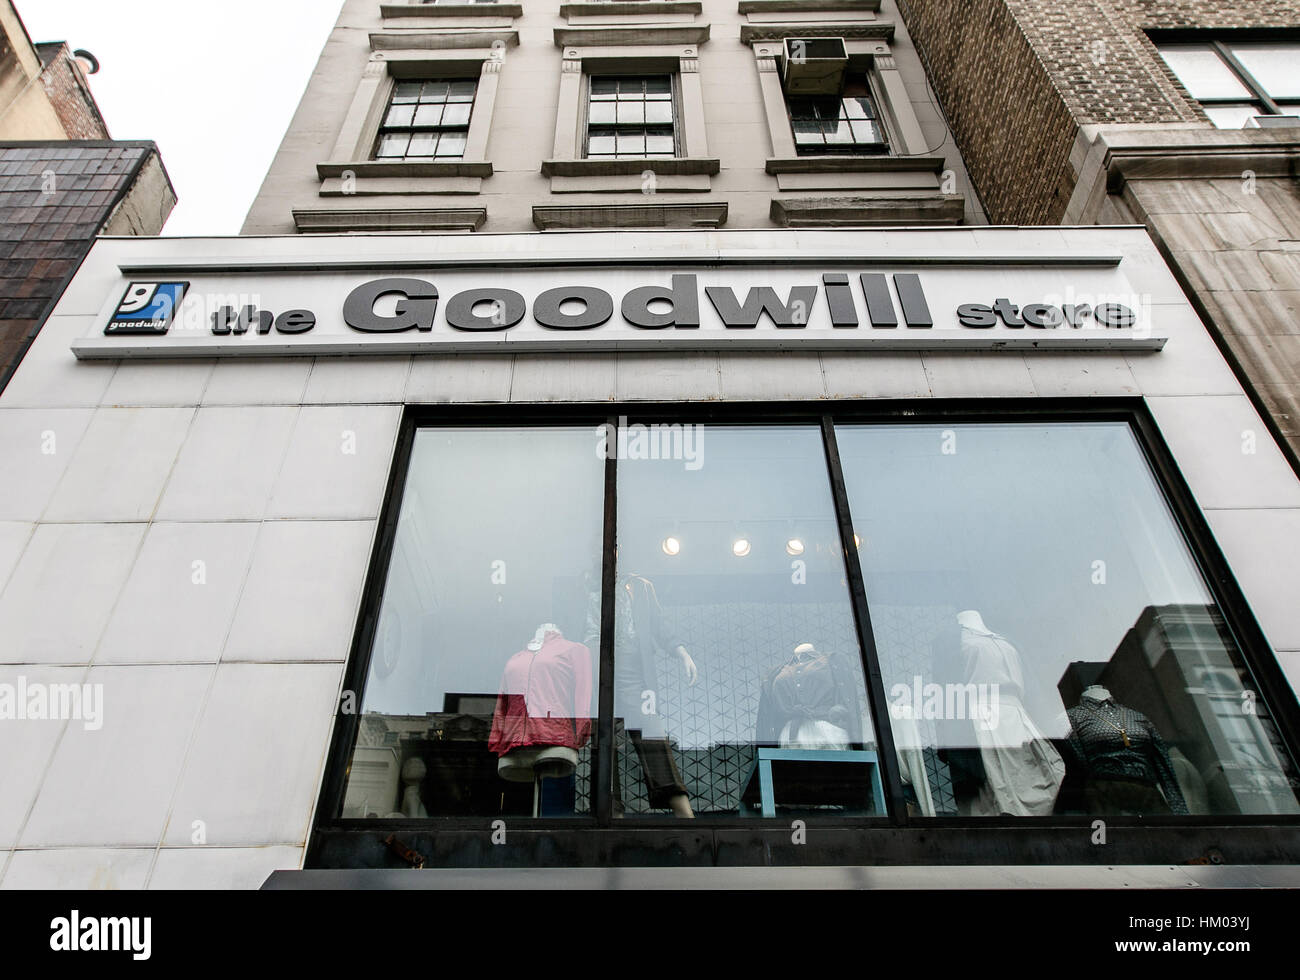 La ventana frontal de una tienda de buena voluntad West 72 Street en Manhattan. Foto de stock